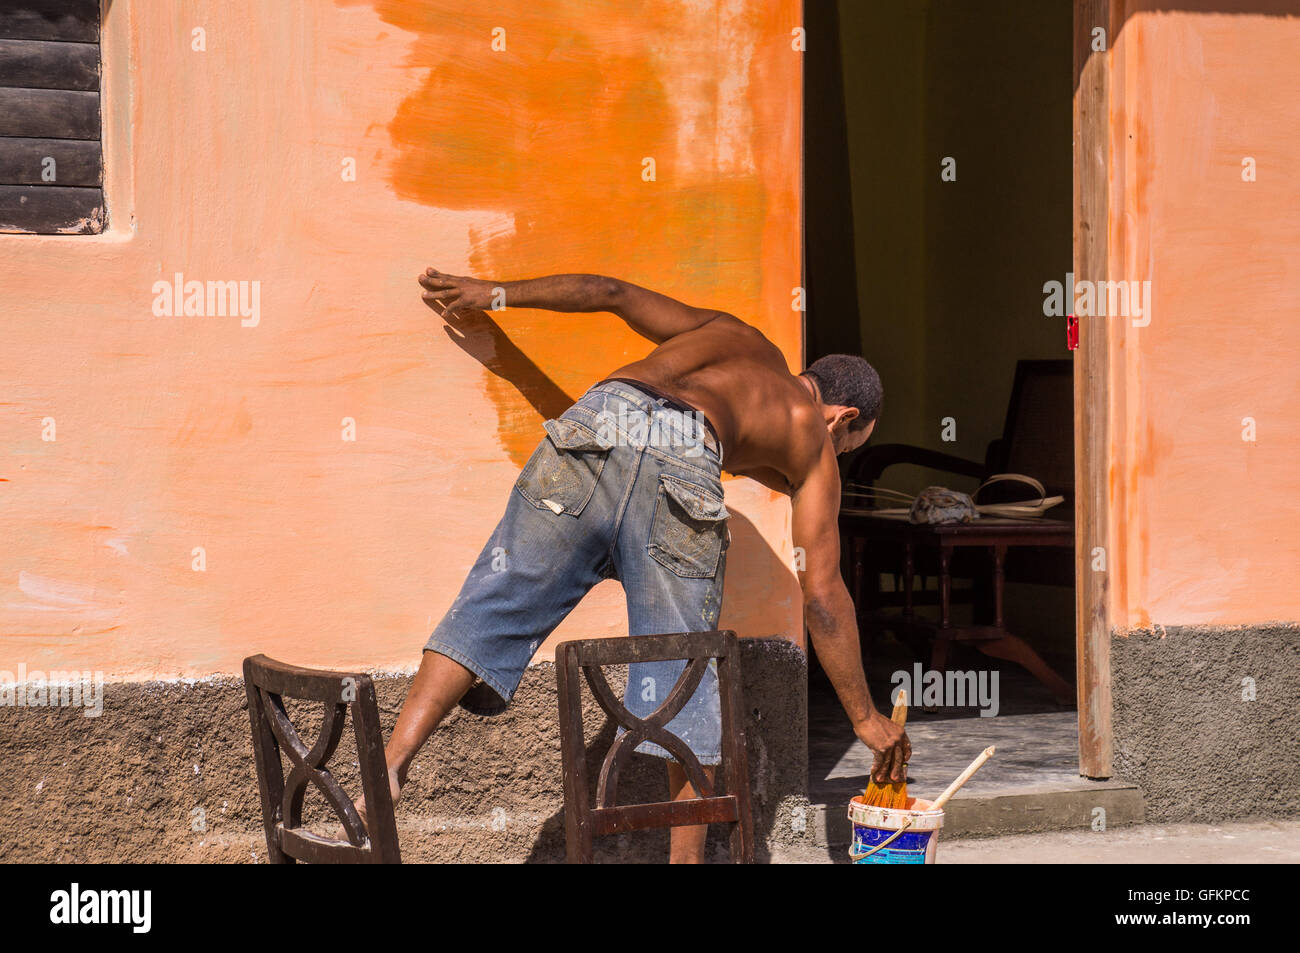 Trinidad, Cuba el 30 de diciembre de 2015: Un hombre es pintar una pared con un color naranja brillante. Esto ilustra el repintado de C Foto de stock